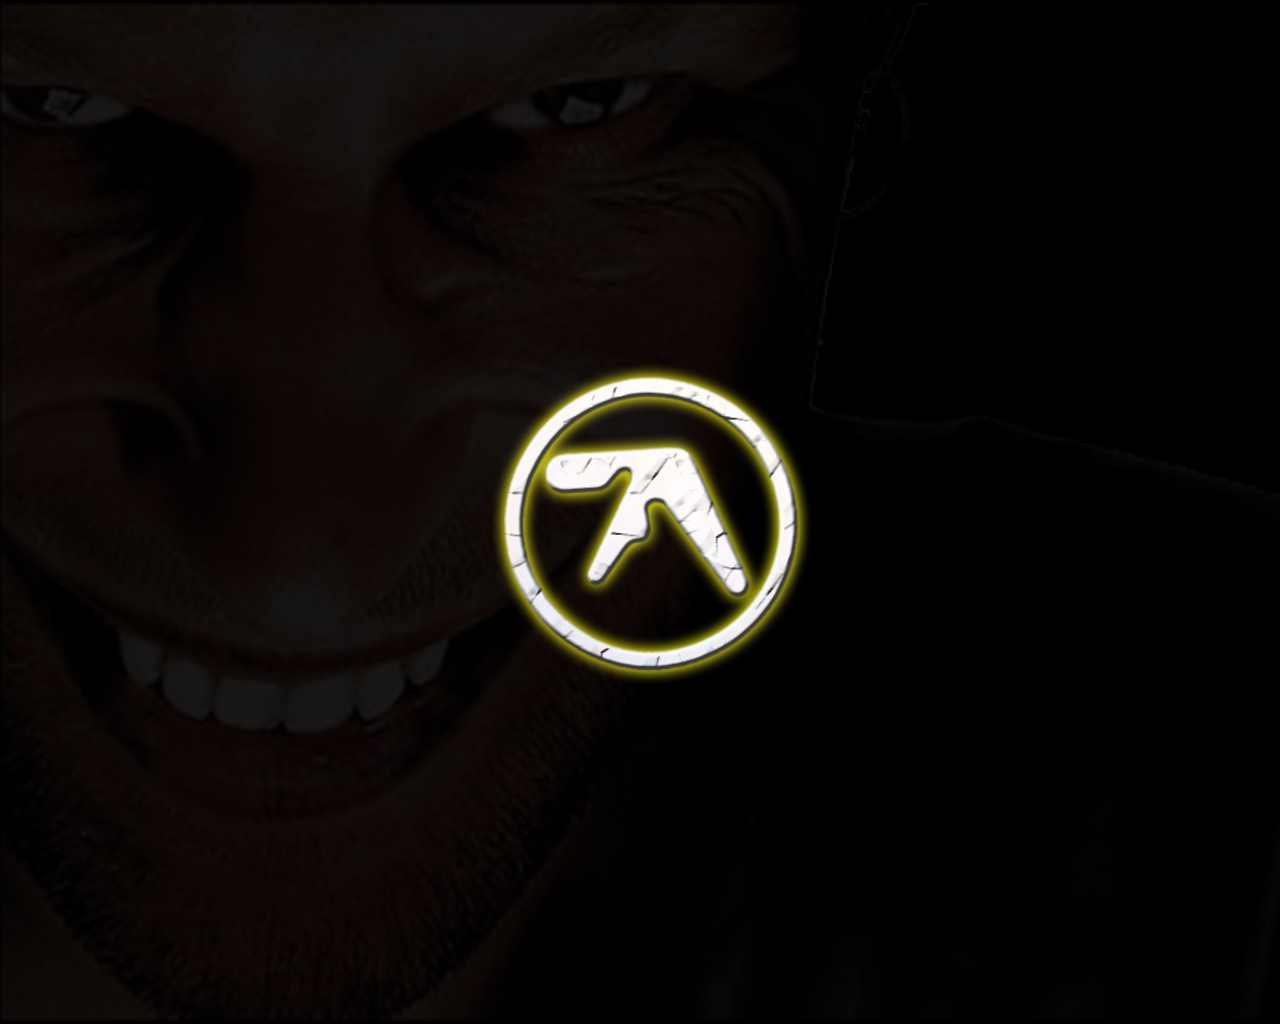 Aphex Twin face Wallpaper by TT WIZ on DeviantArt